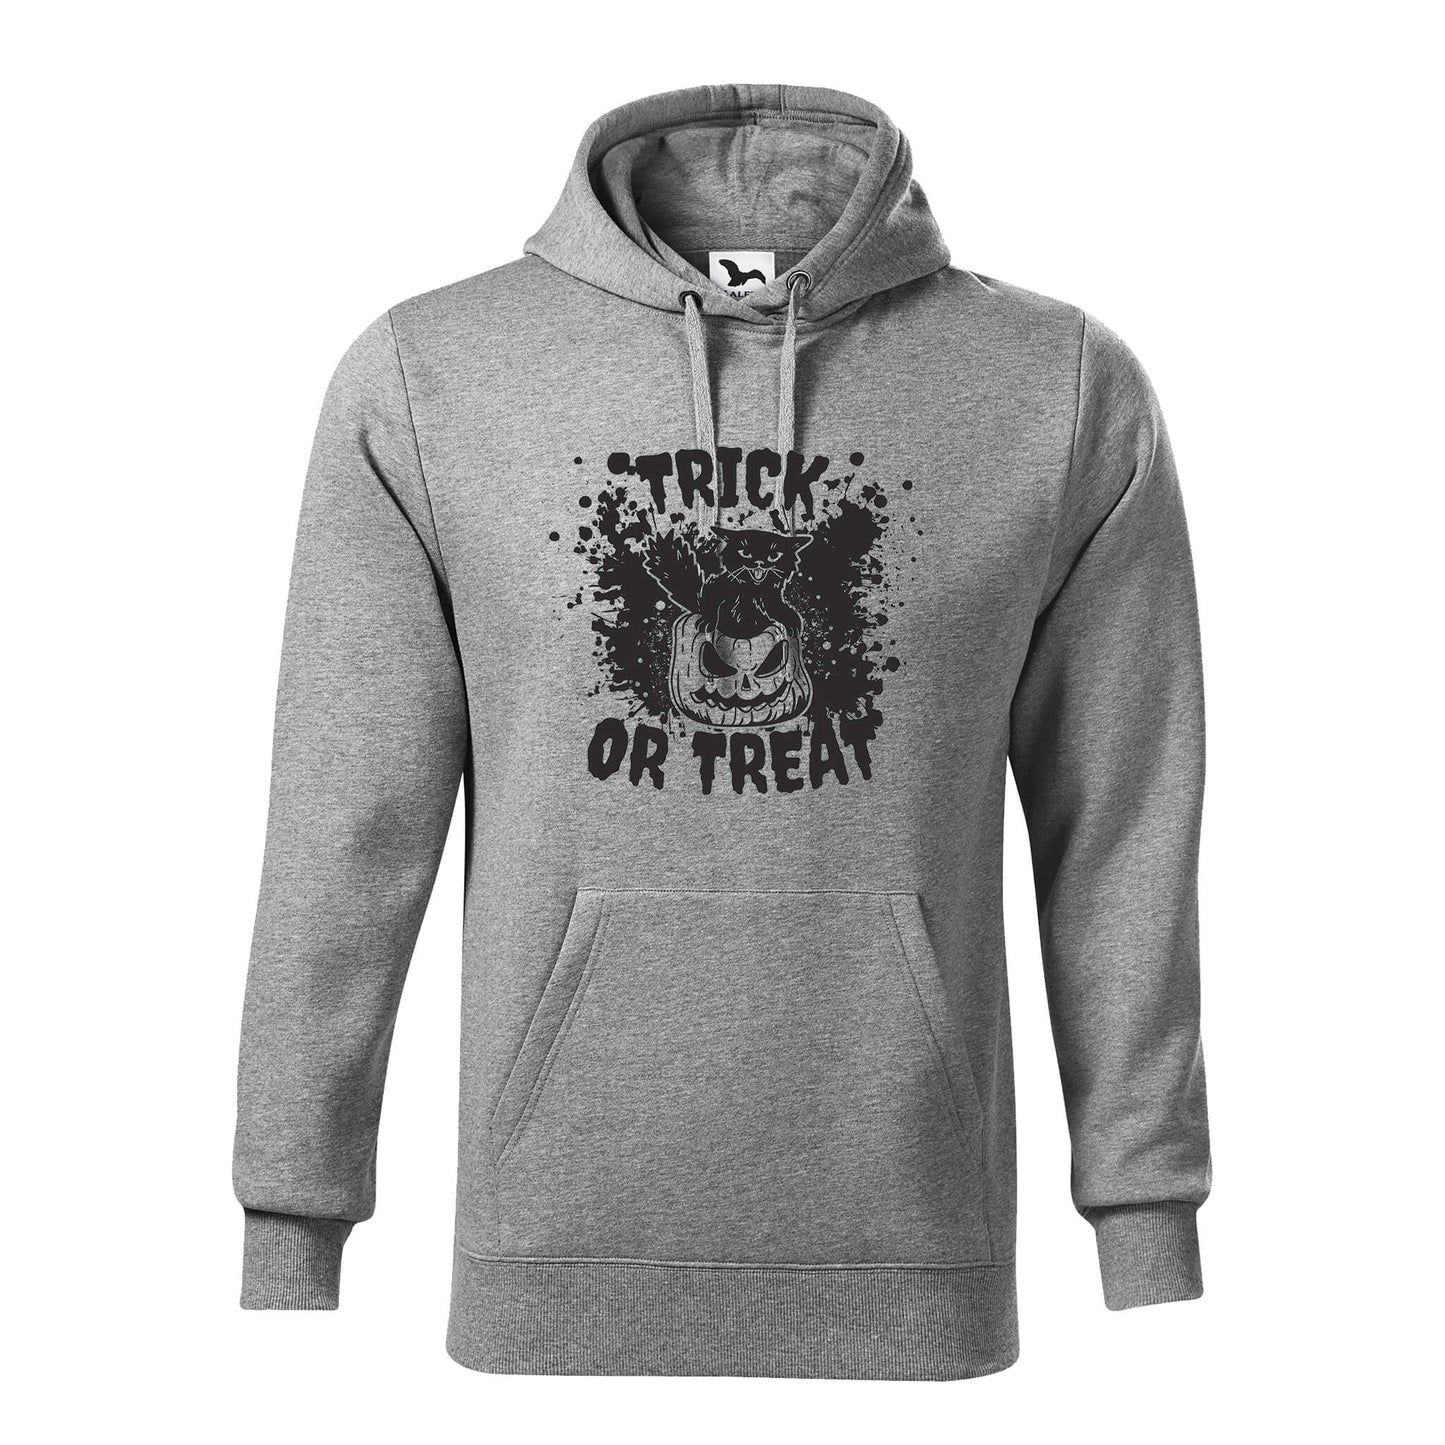 Trick or treat hoodie - rvdesignprint